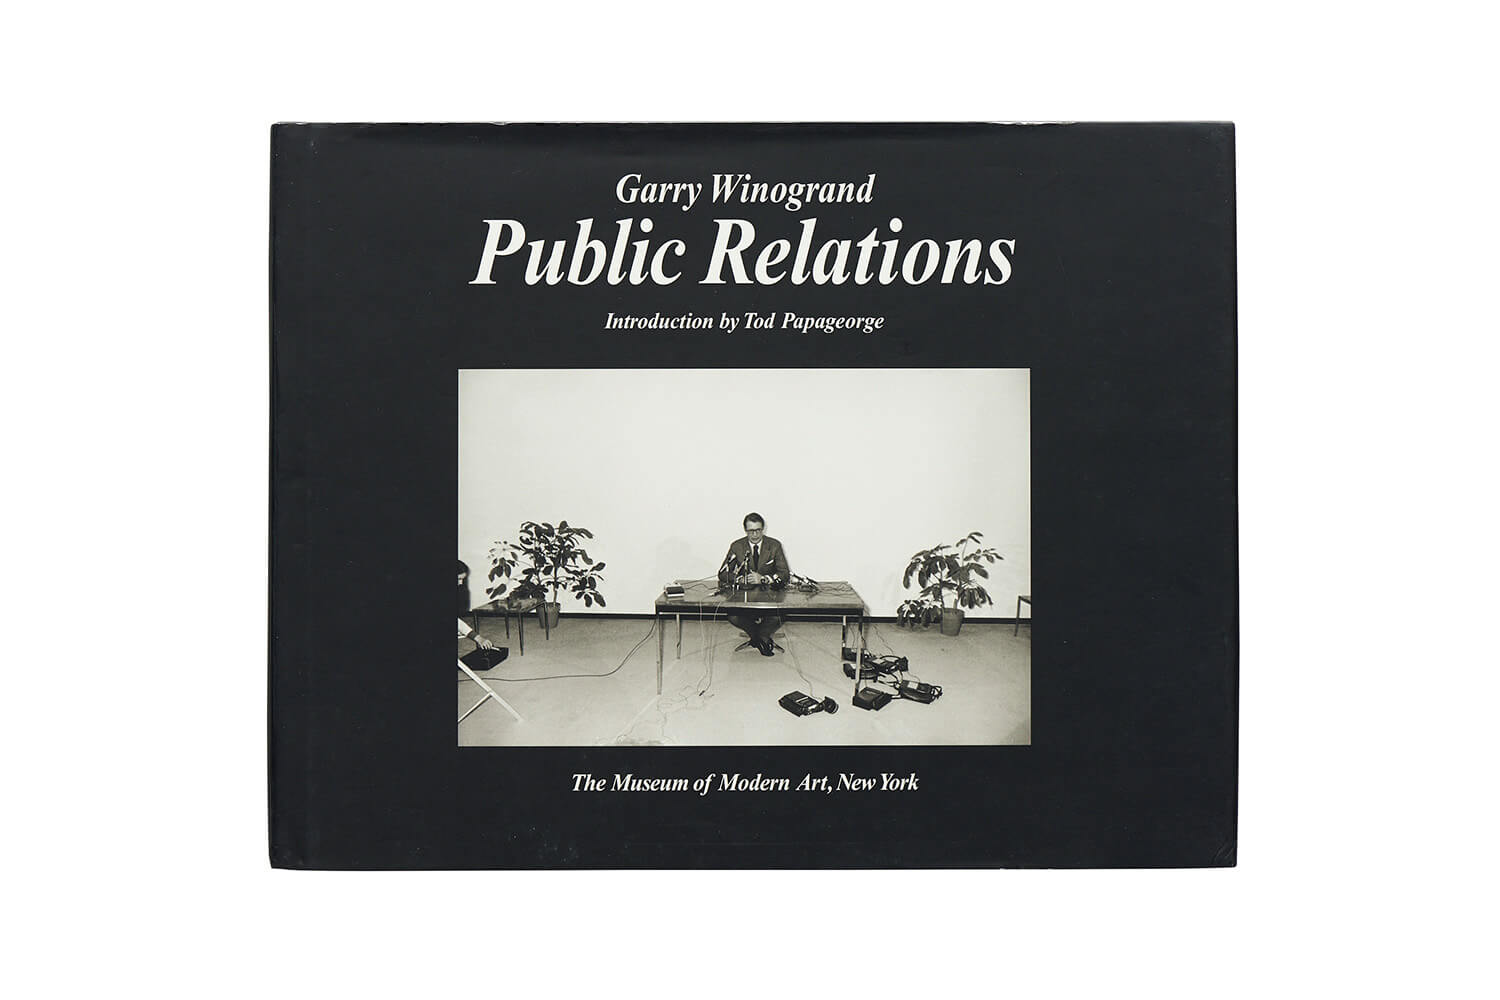 ギャリー・ウィノグランド 写真集『Public Relations』表紙